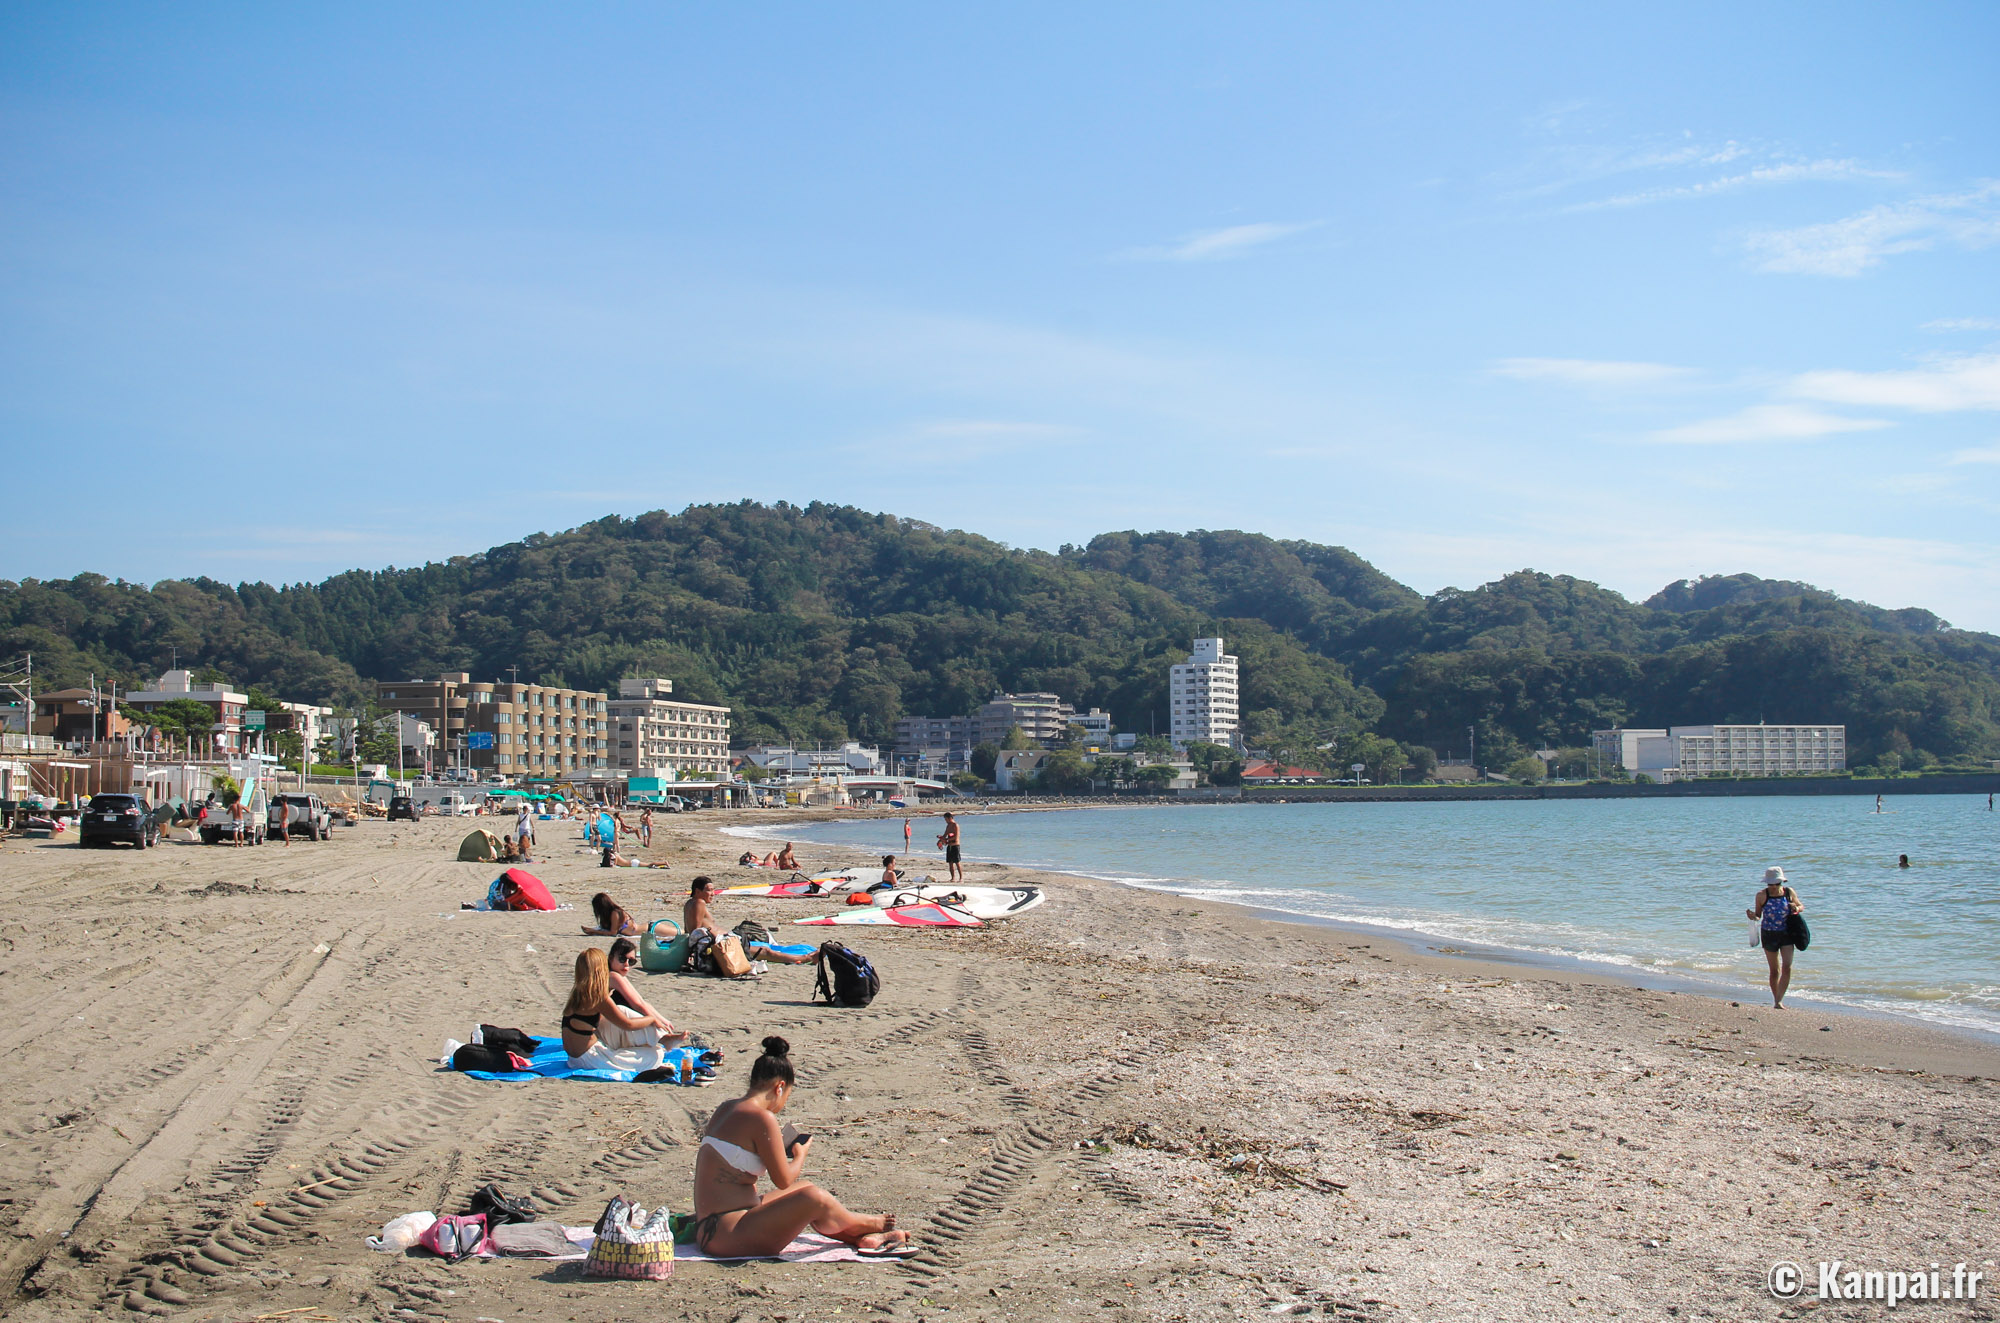 Zushi - 🏖 La plage récréative et familiale près de Tokyo